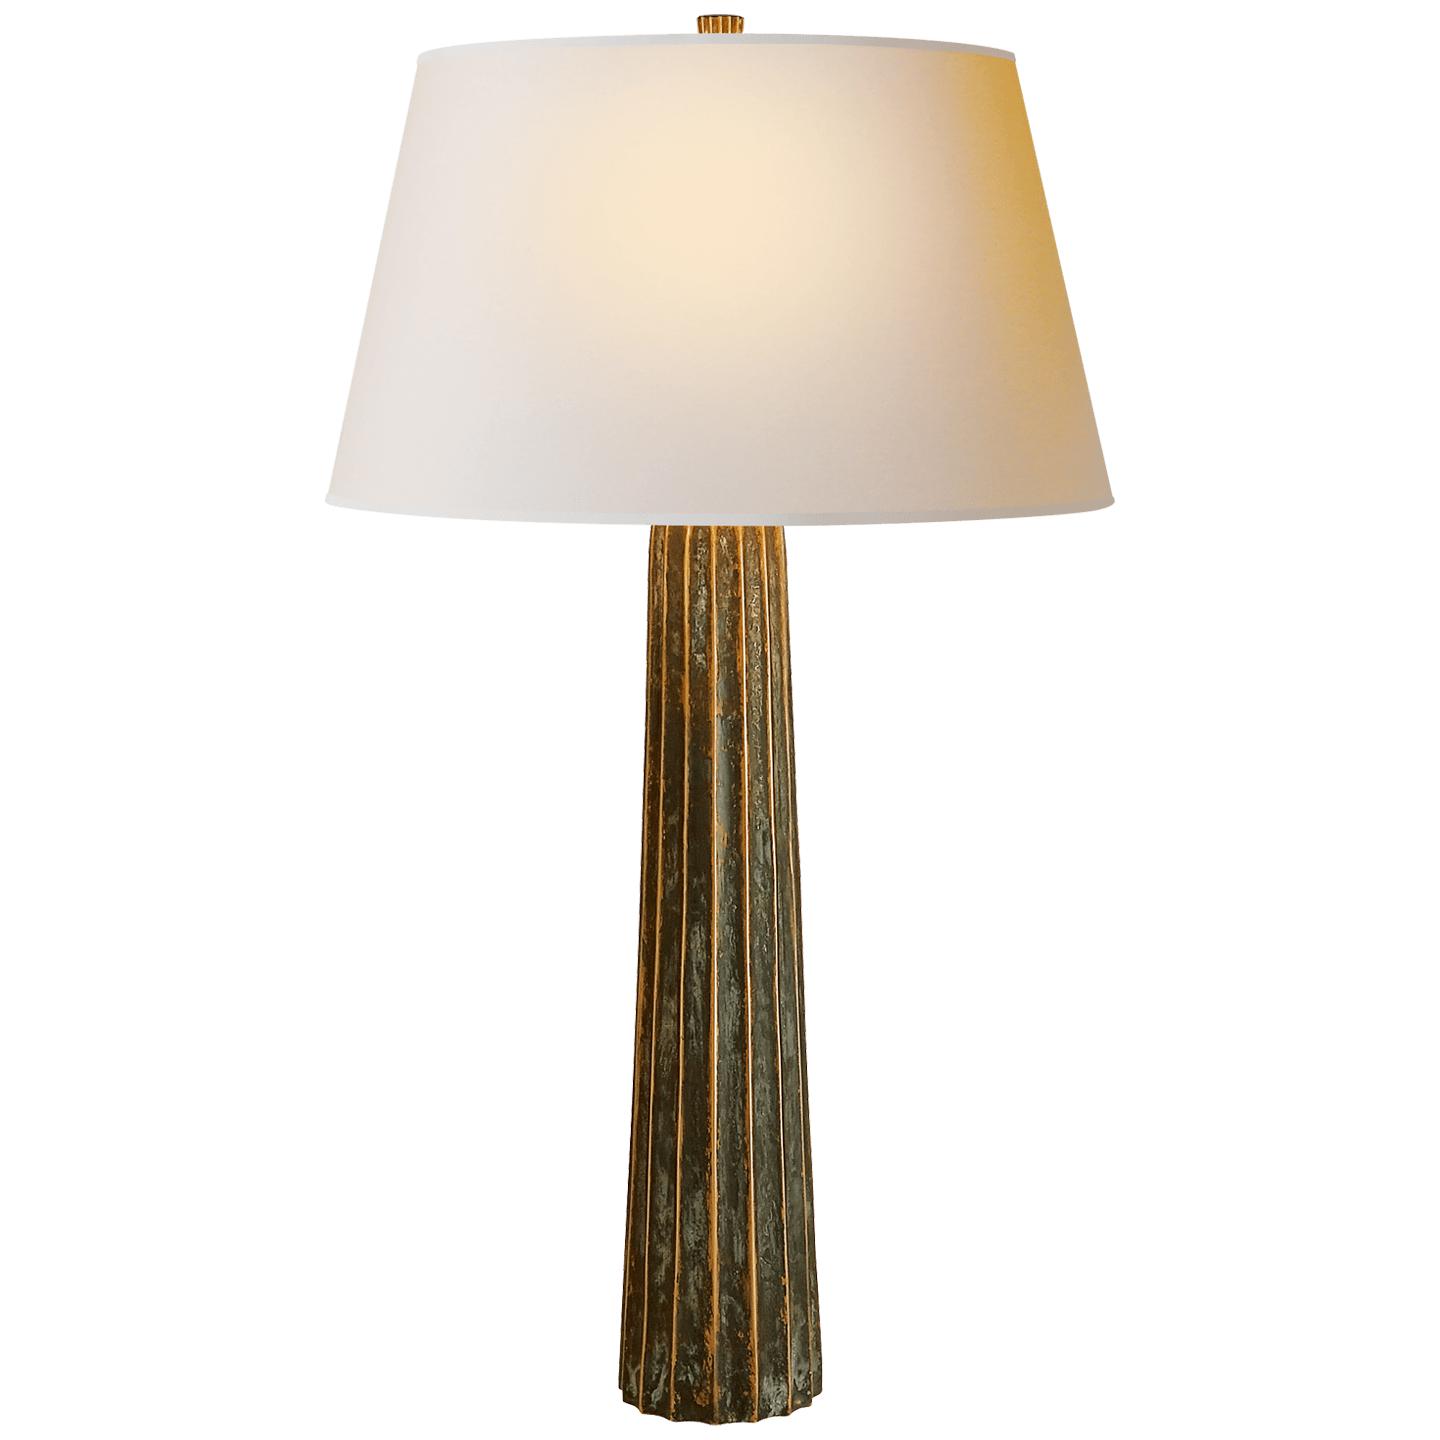 Купить Настольная лампа Fluted Spire Large Table Lamp в интернет-магазине roooms.ru